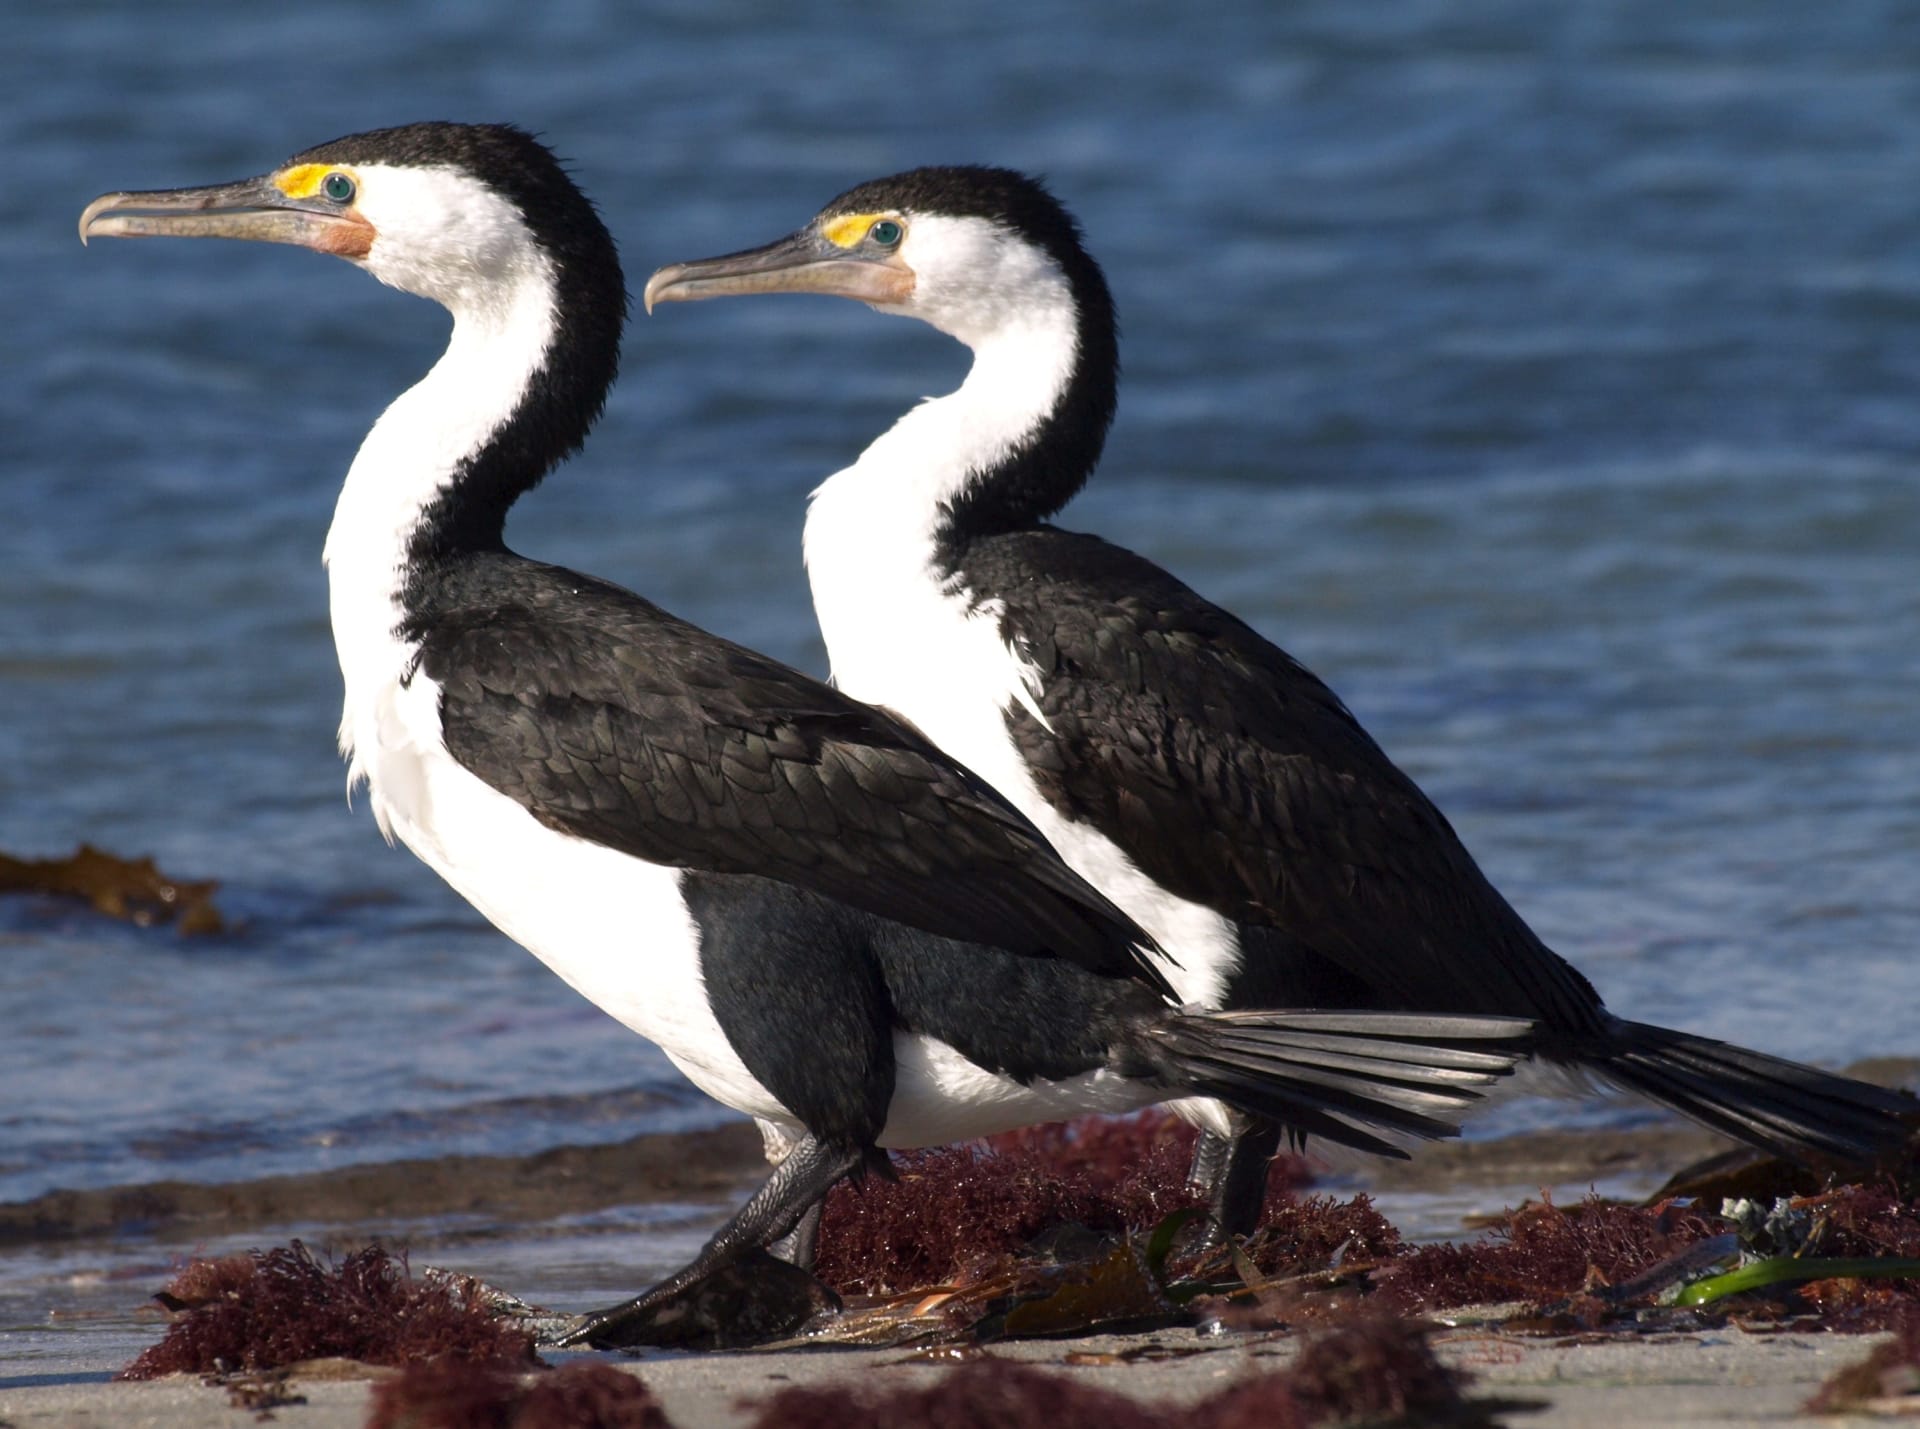 Tučňáci, pelikáni, kormoráni a mnoho dalších druhů ptactva osidluje malý ostrov u západního břehu Austrálie